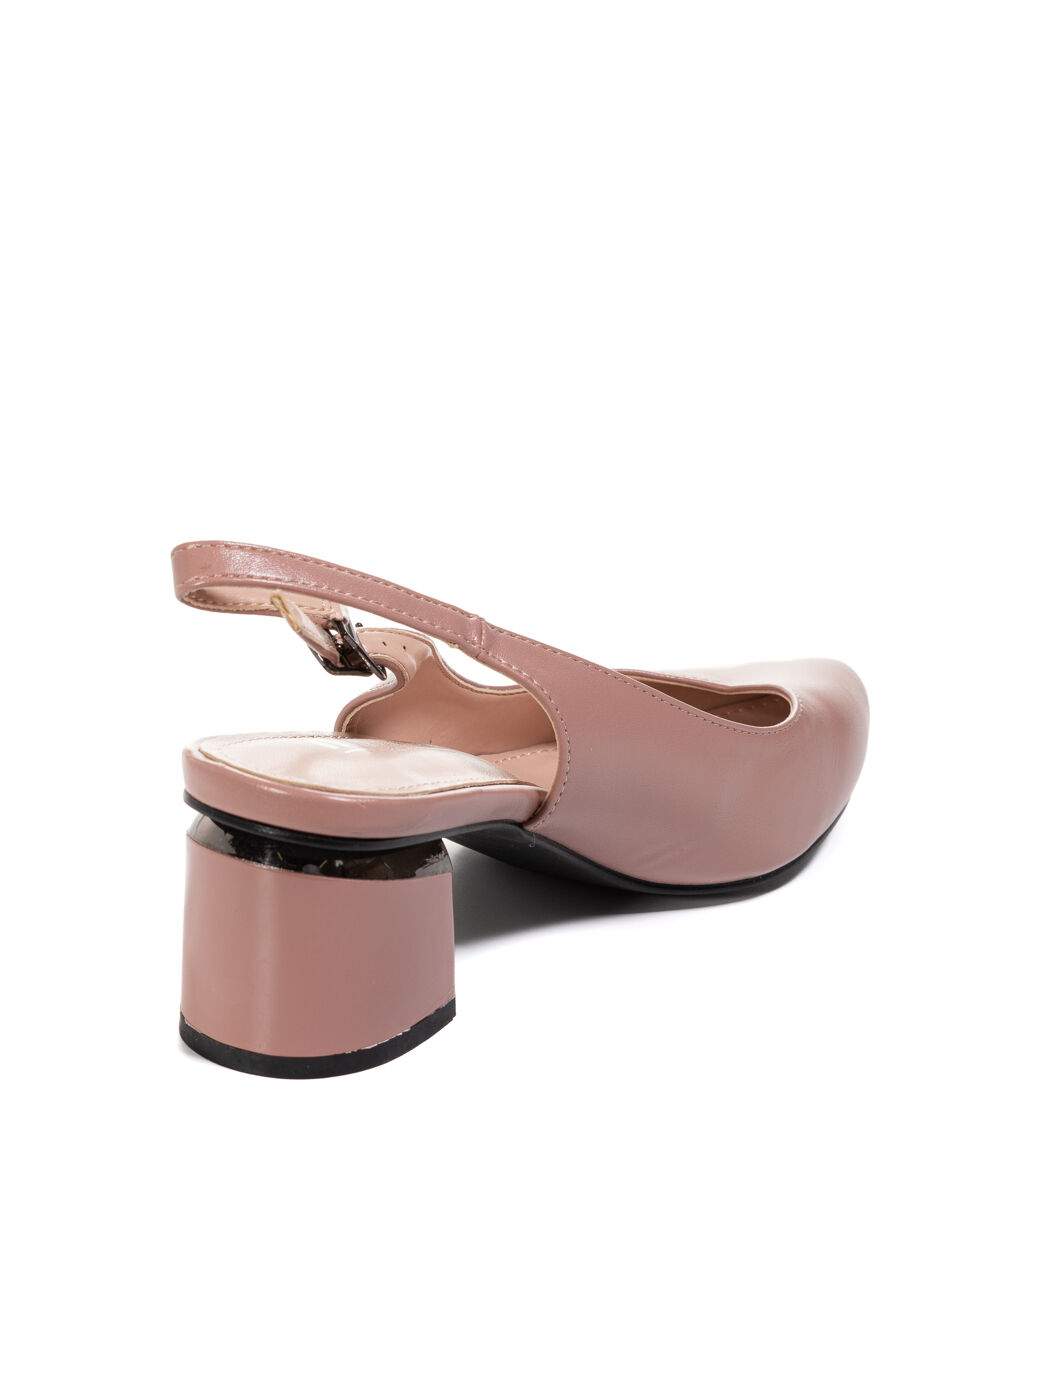 Туфли женские розовые экокожа каблук устойчивый лето от производителя CM вид 1